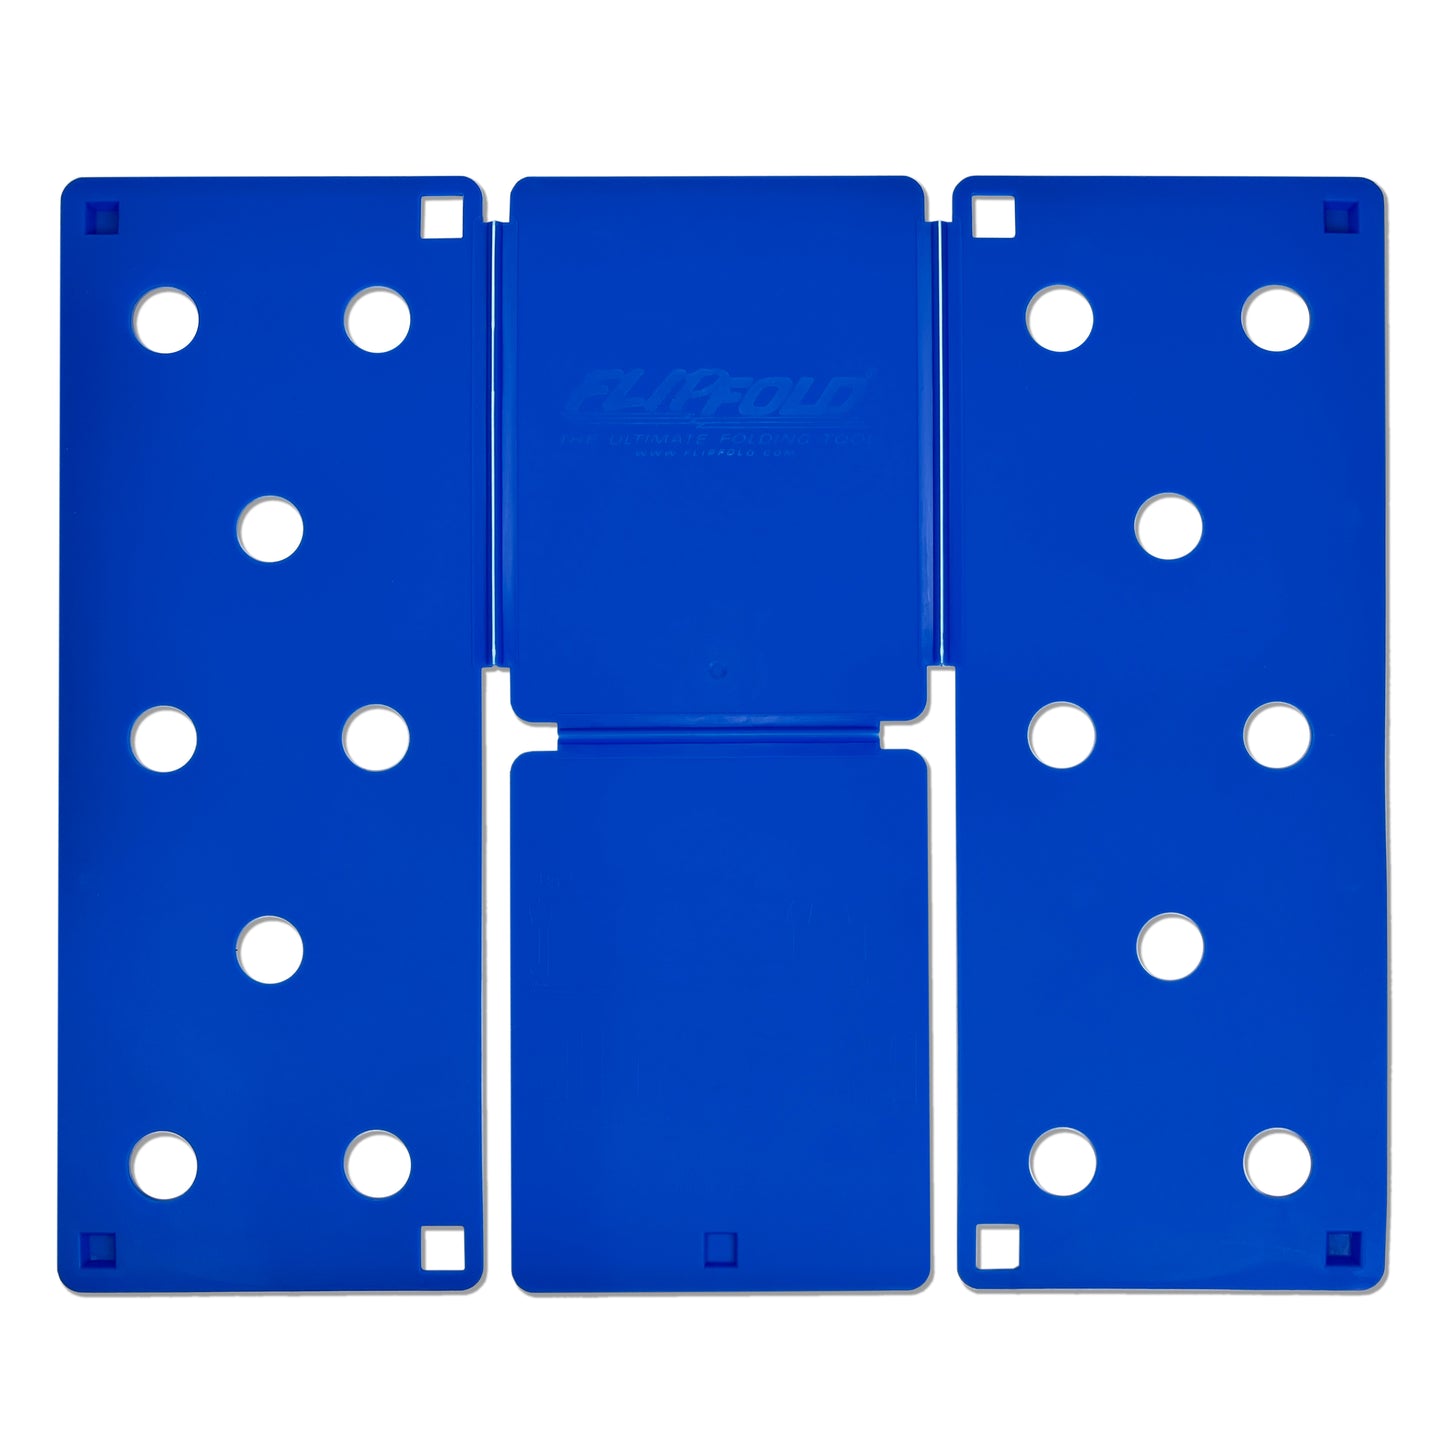 9 x 12 Blue FlipFold